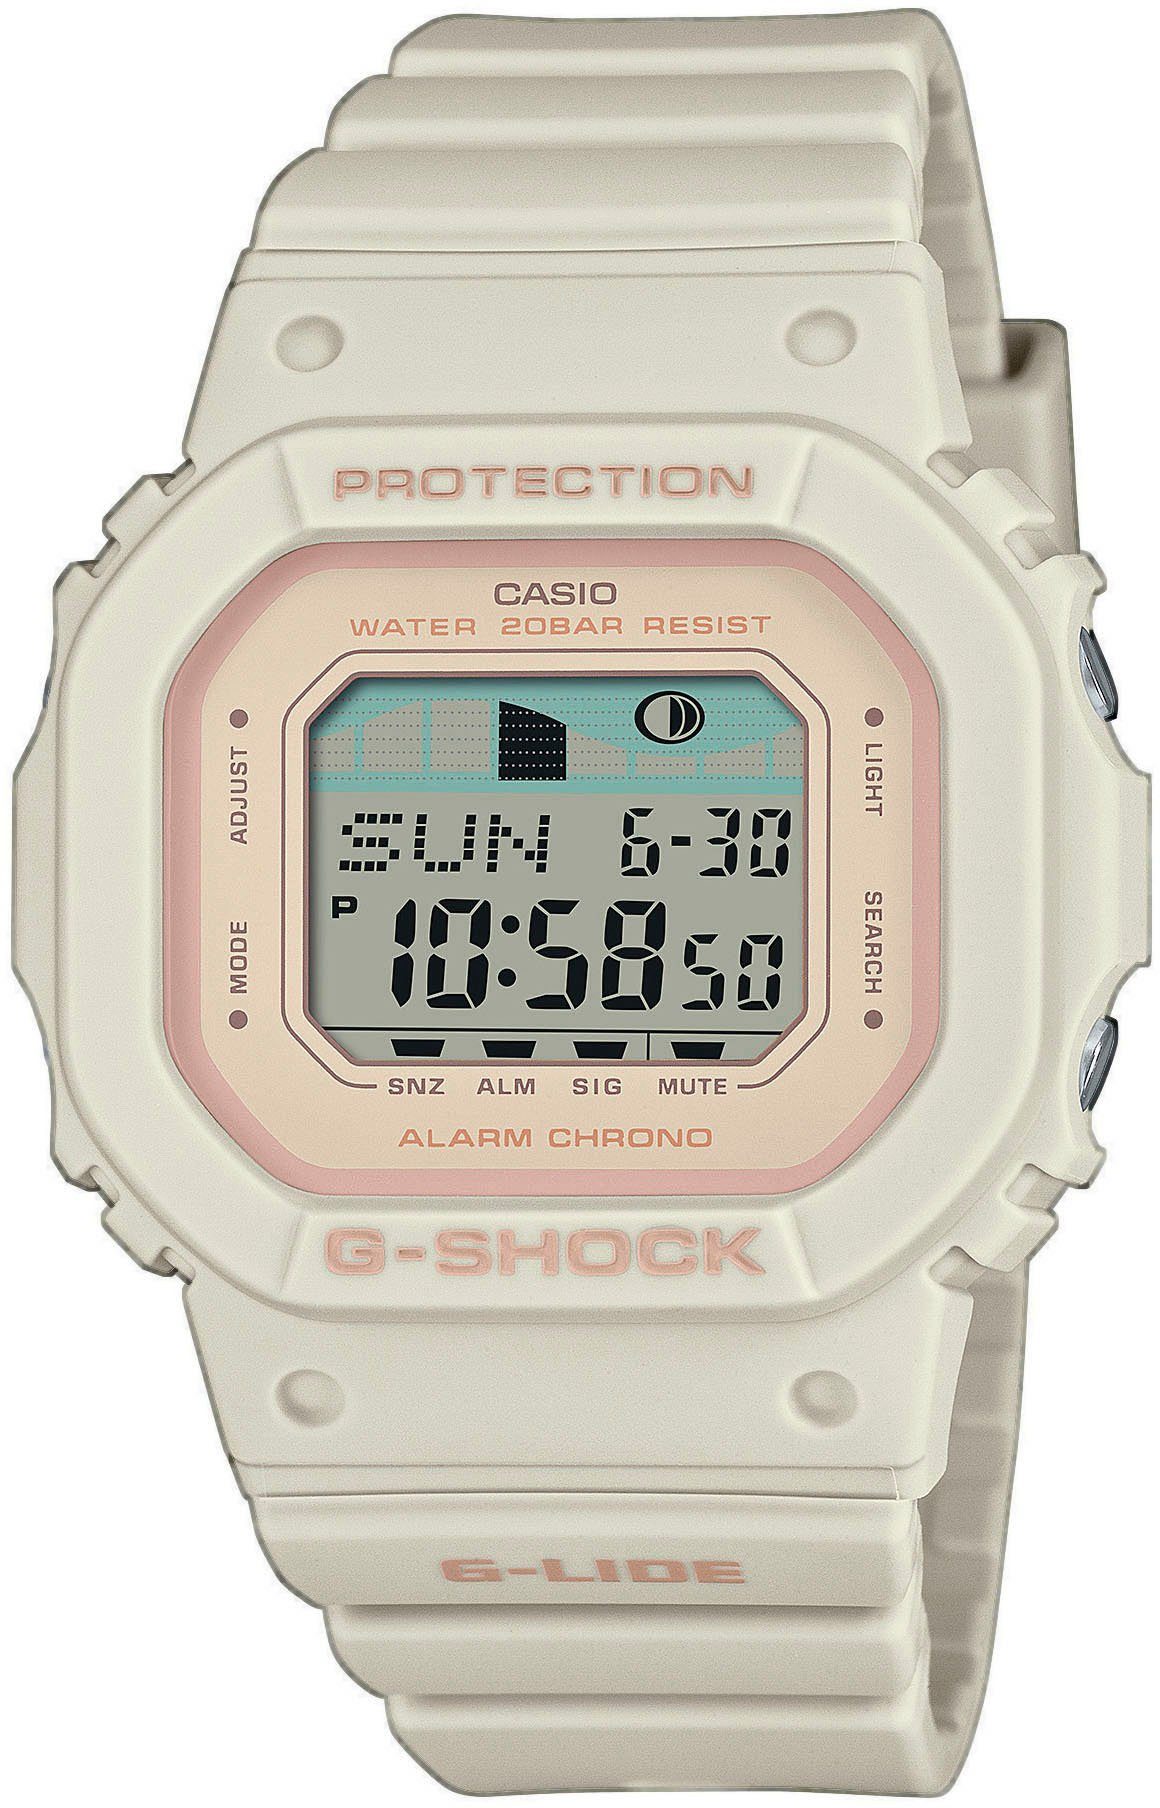 CASIO G-SHOCK Chronograph GLX-S5600-7ER, Quarzuhr, Armbanduhr, Damen, Herren, digital, bis 20 bar wasserdicht